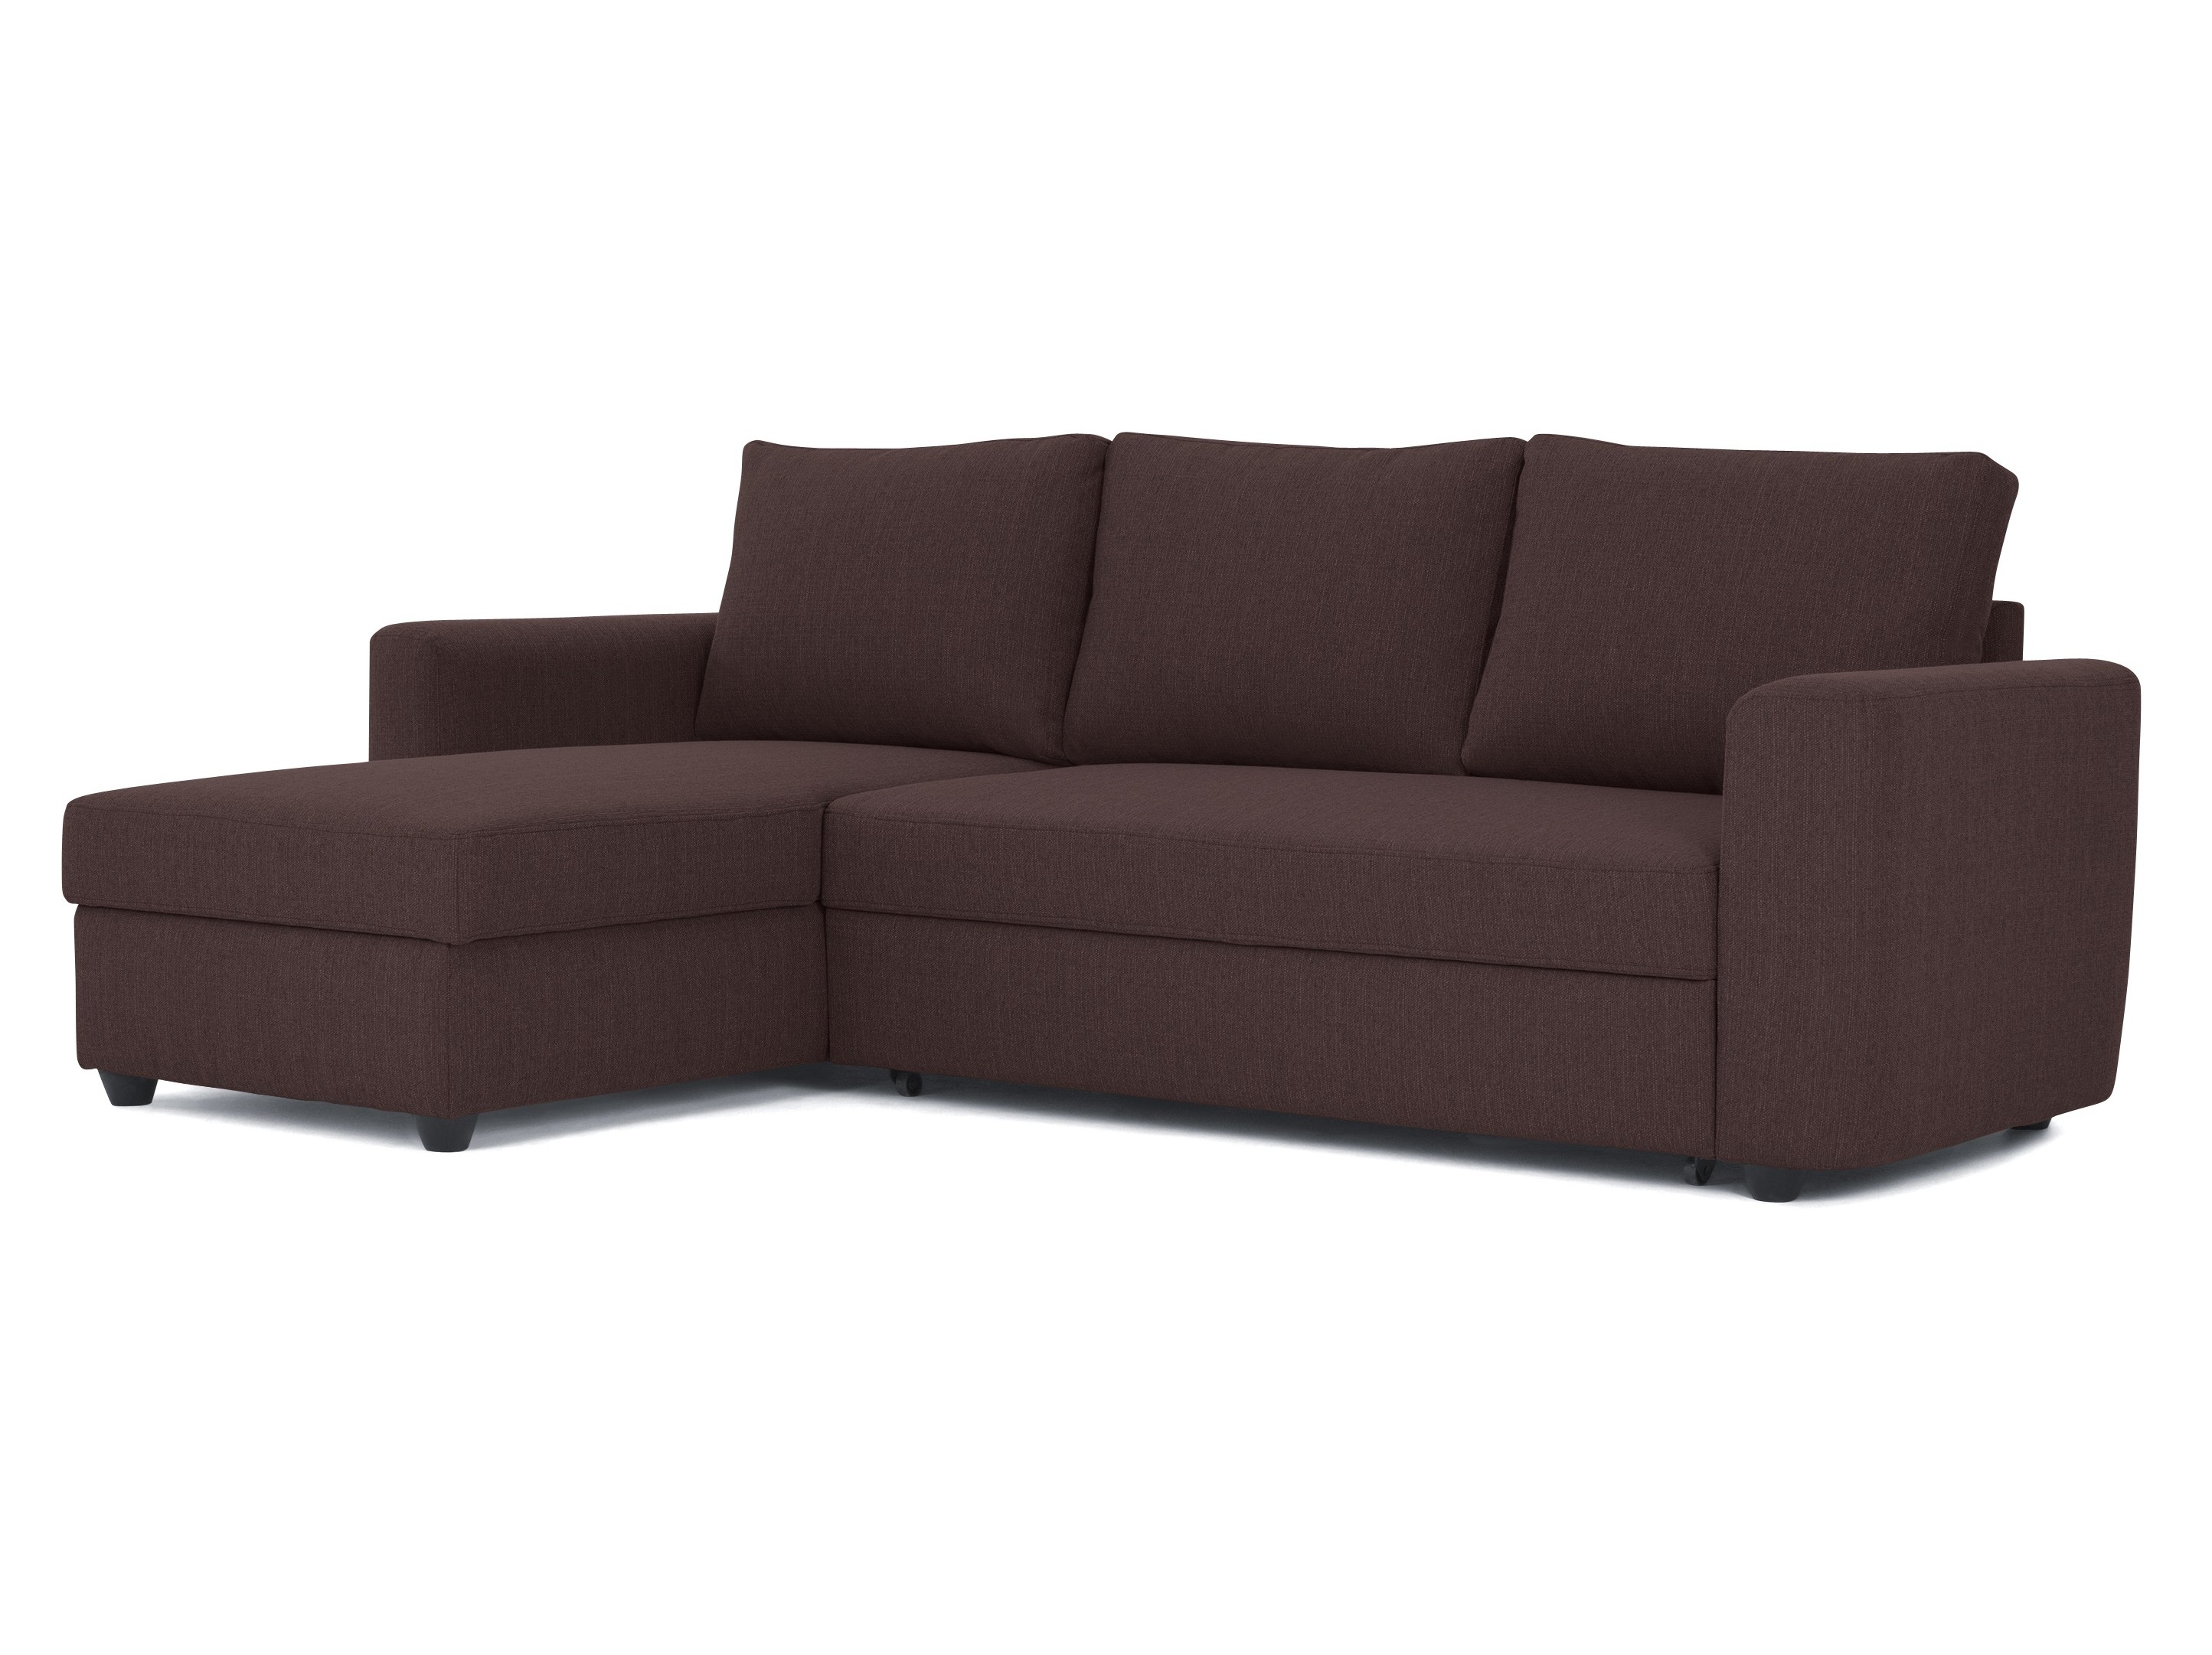  Угловой диван-кровать marble (myfurnish) коричневый 243x83x152 см.